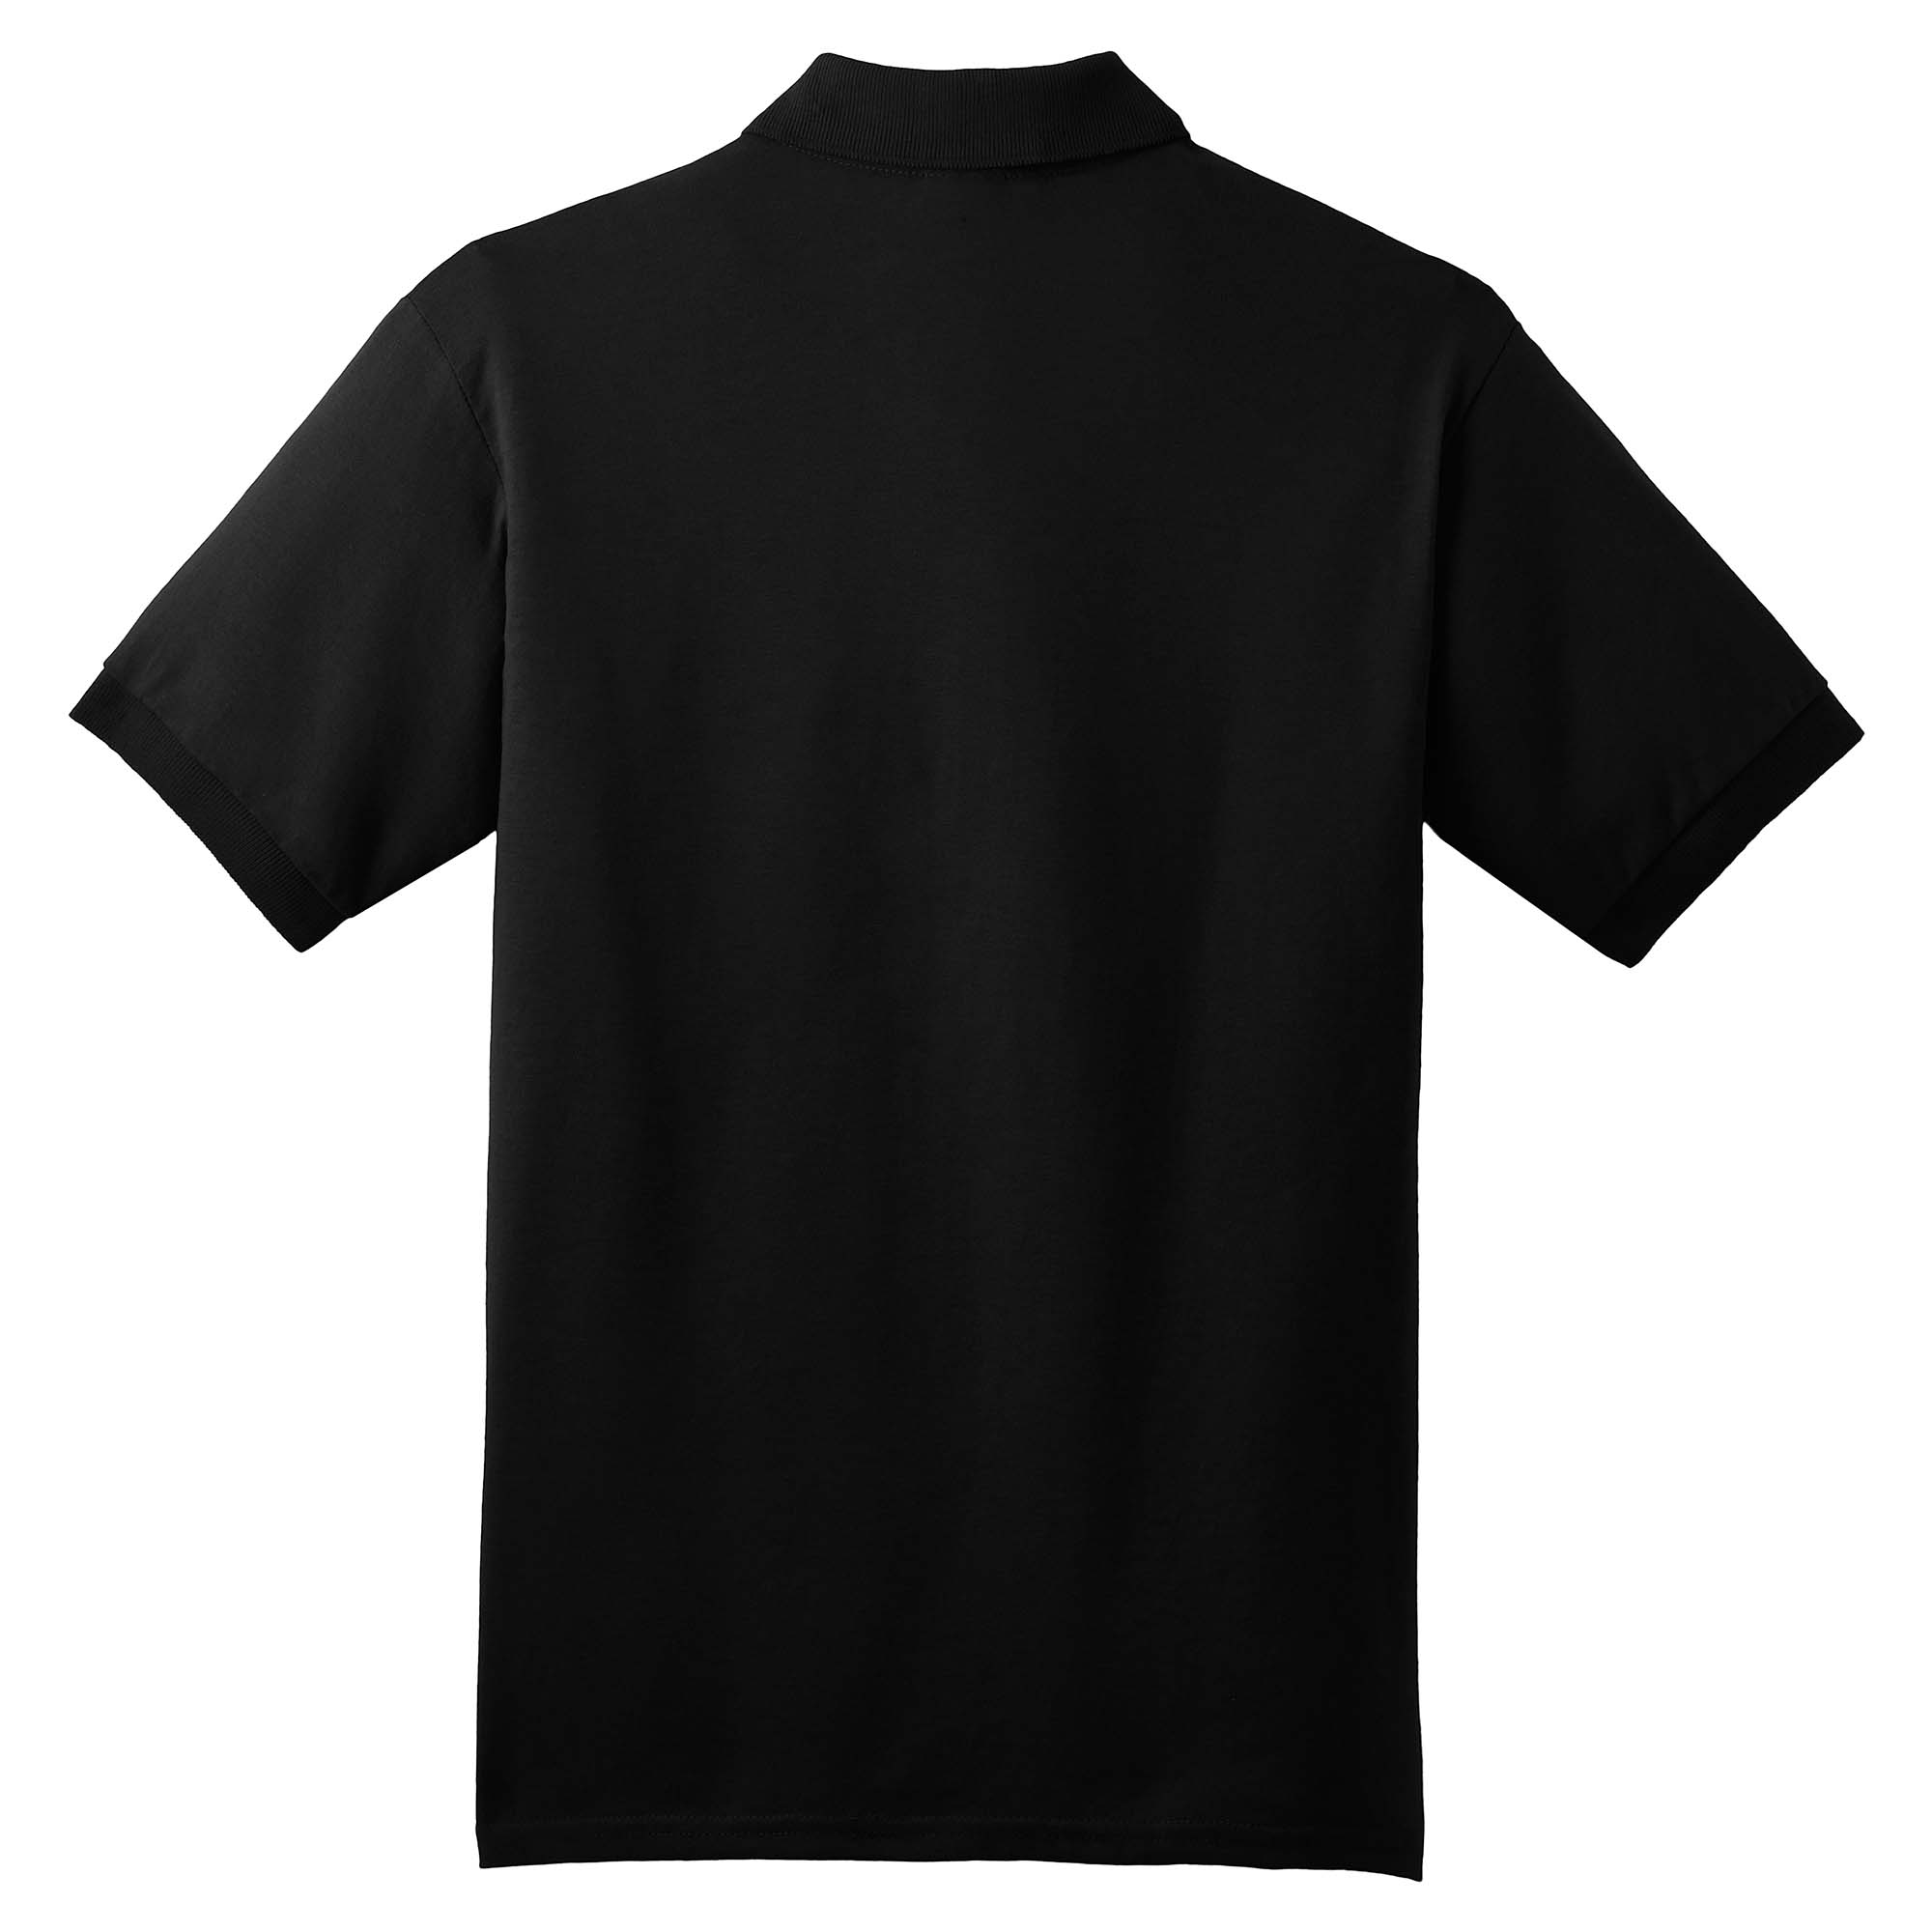 Gildan 8800 DryBlend Jersey Knit Sport Shirt - Black | FullSource.com